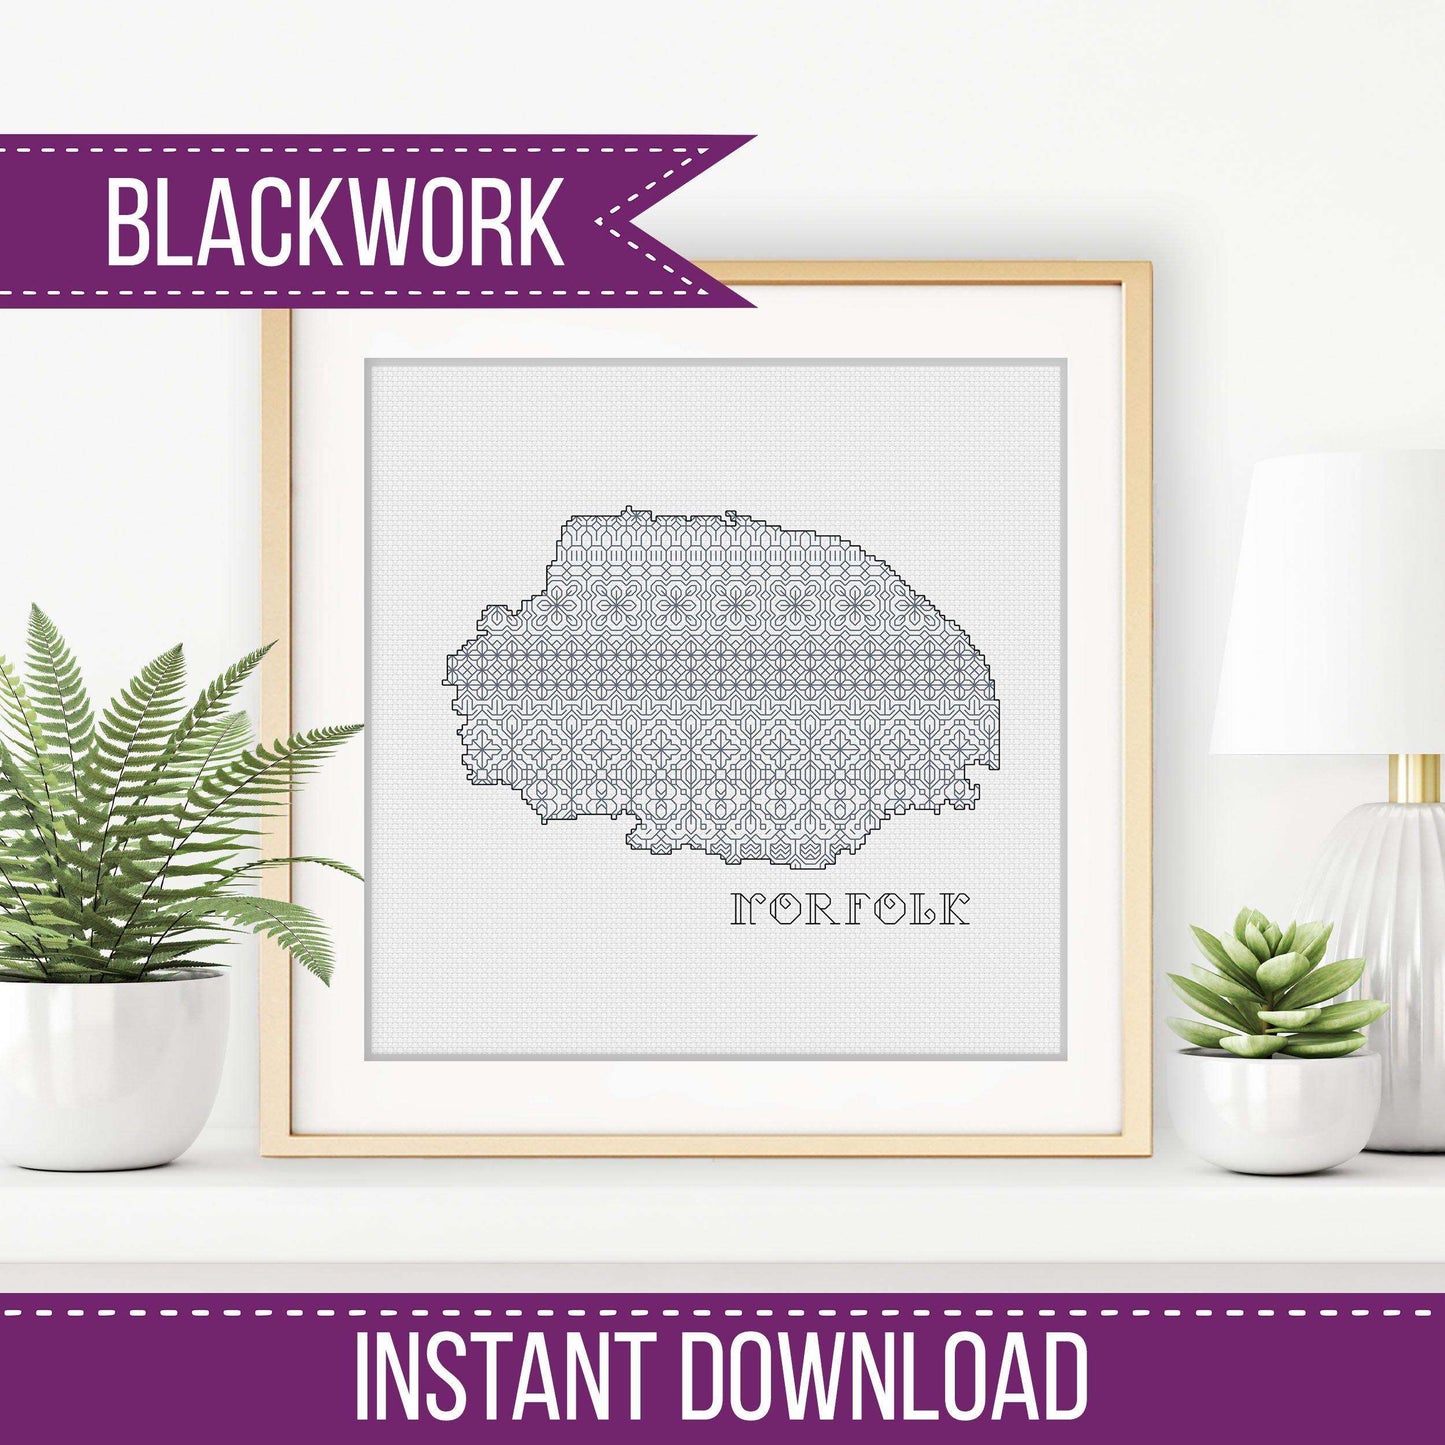 Norfolk Blackwork - Blackwork Patterns & Cross Stitch by Peppermint Purple